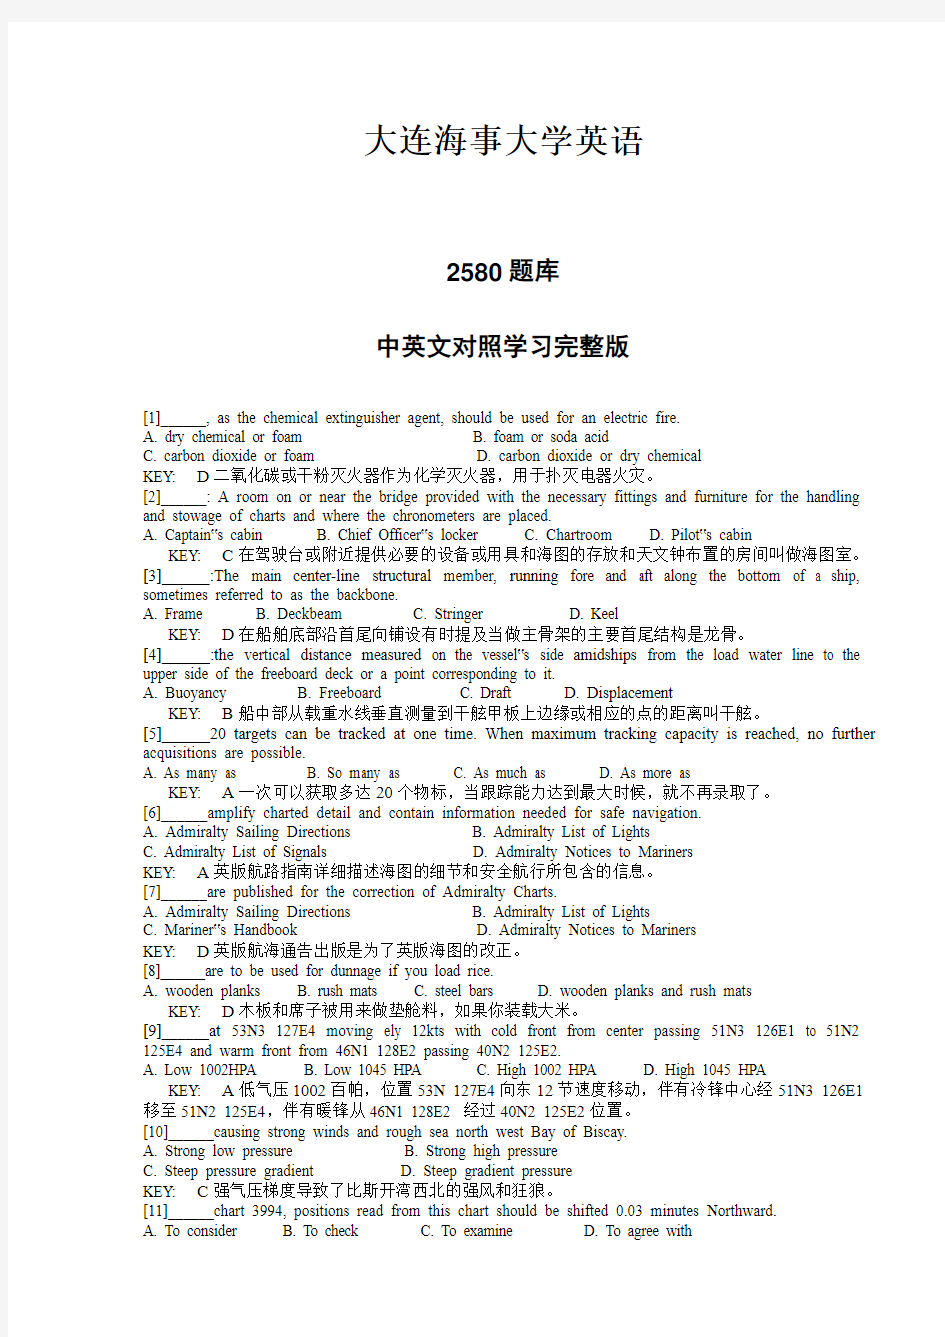 航海英语2580题库中英文对照学习完整翻译版